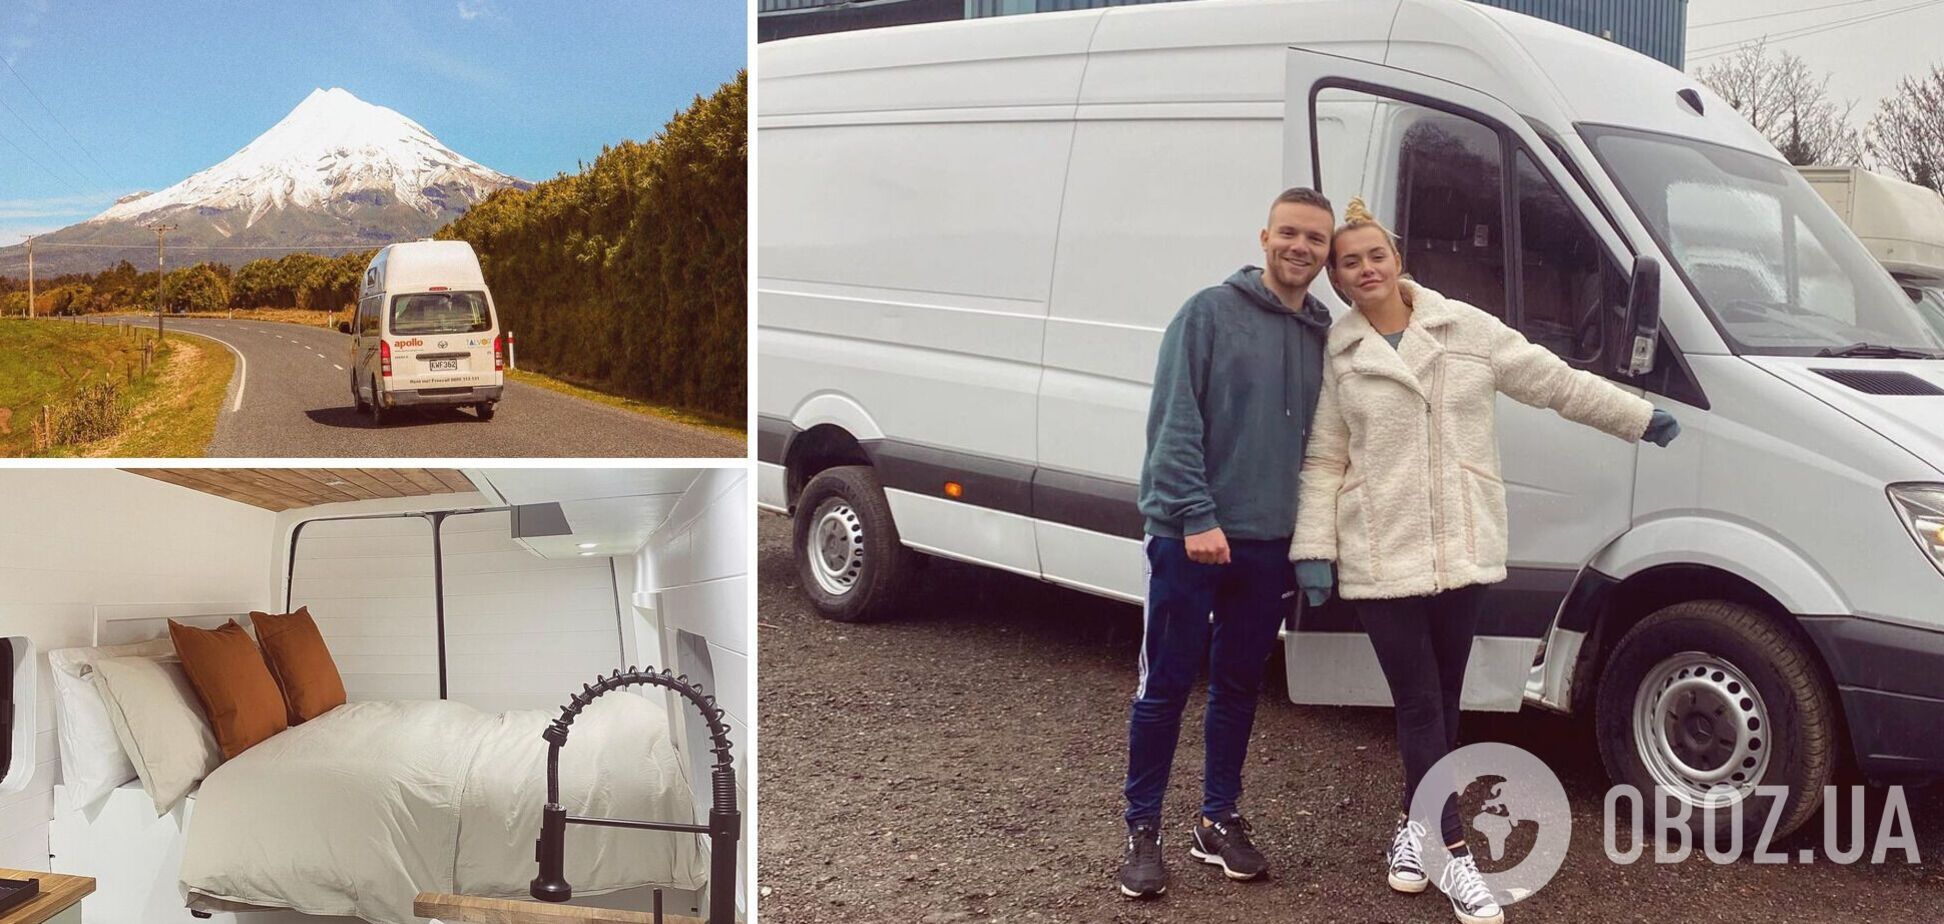 Семья из Англии превратила обшарпанный фургон в стильный дом на колесах и теперь путешествует по миру